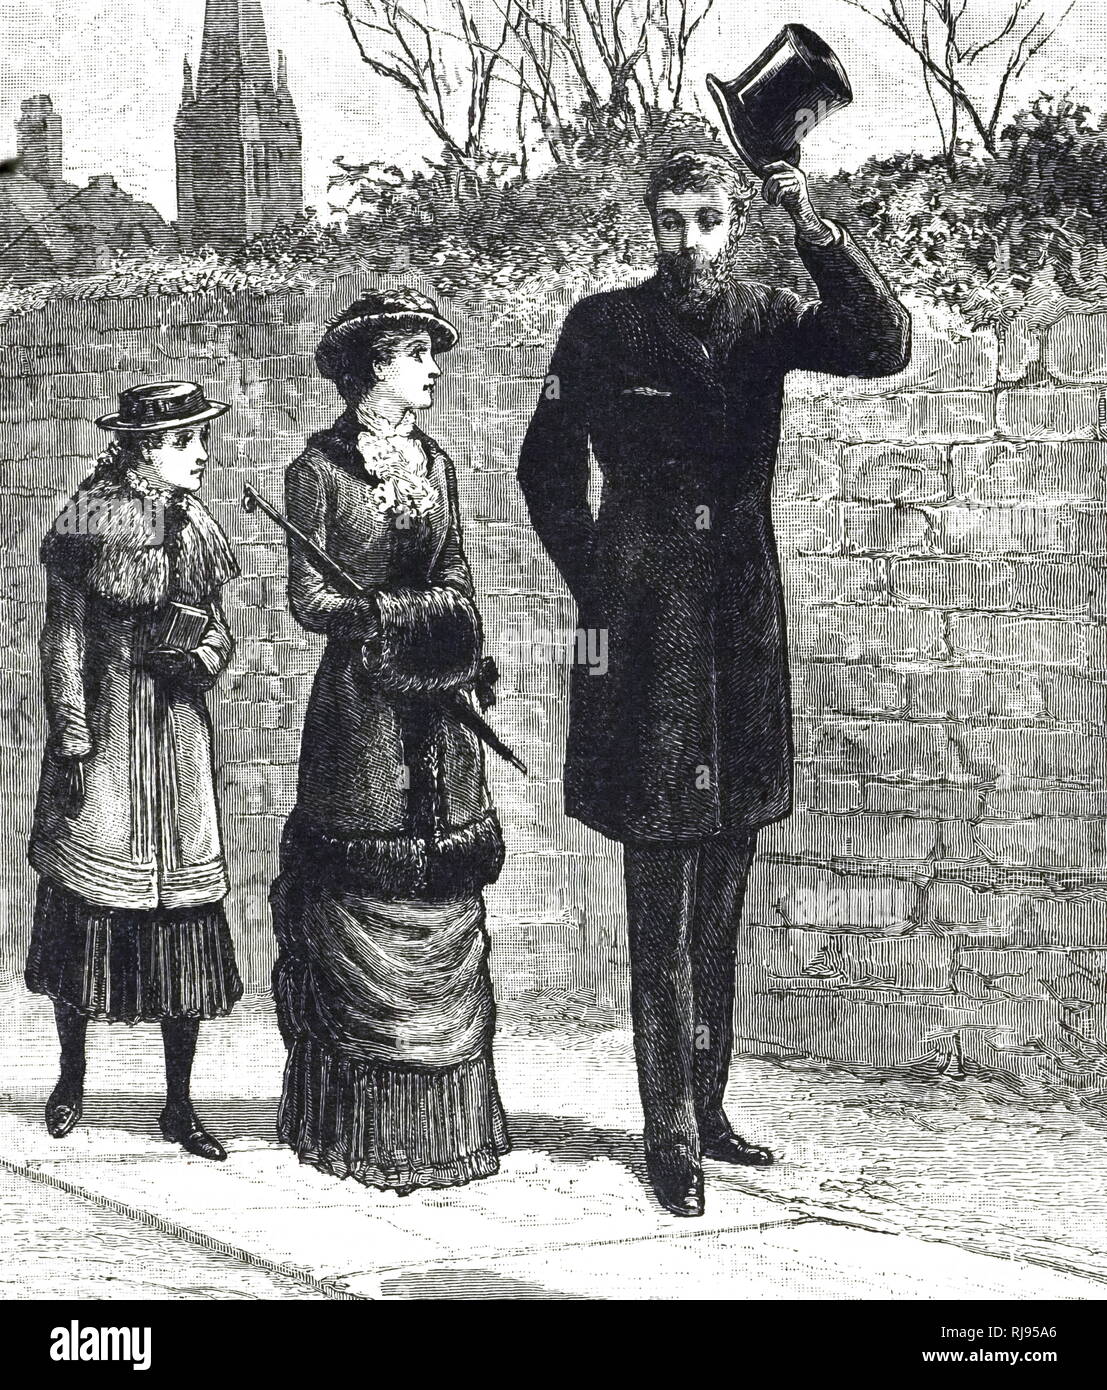 Ein kupferstich mit der Darstellung eines Gentleman hob seinen Hut zwei Damen auf der Straße zu grüßen. Vom 19. Jahrhundert Stockfoto